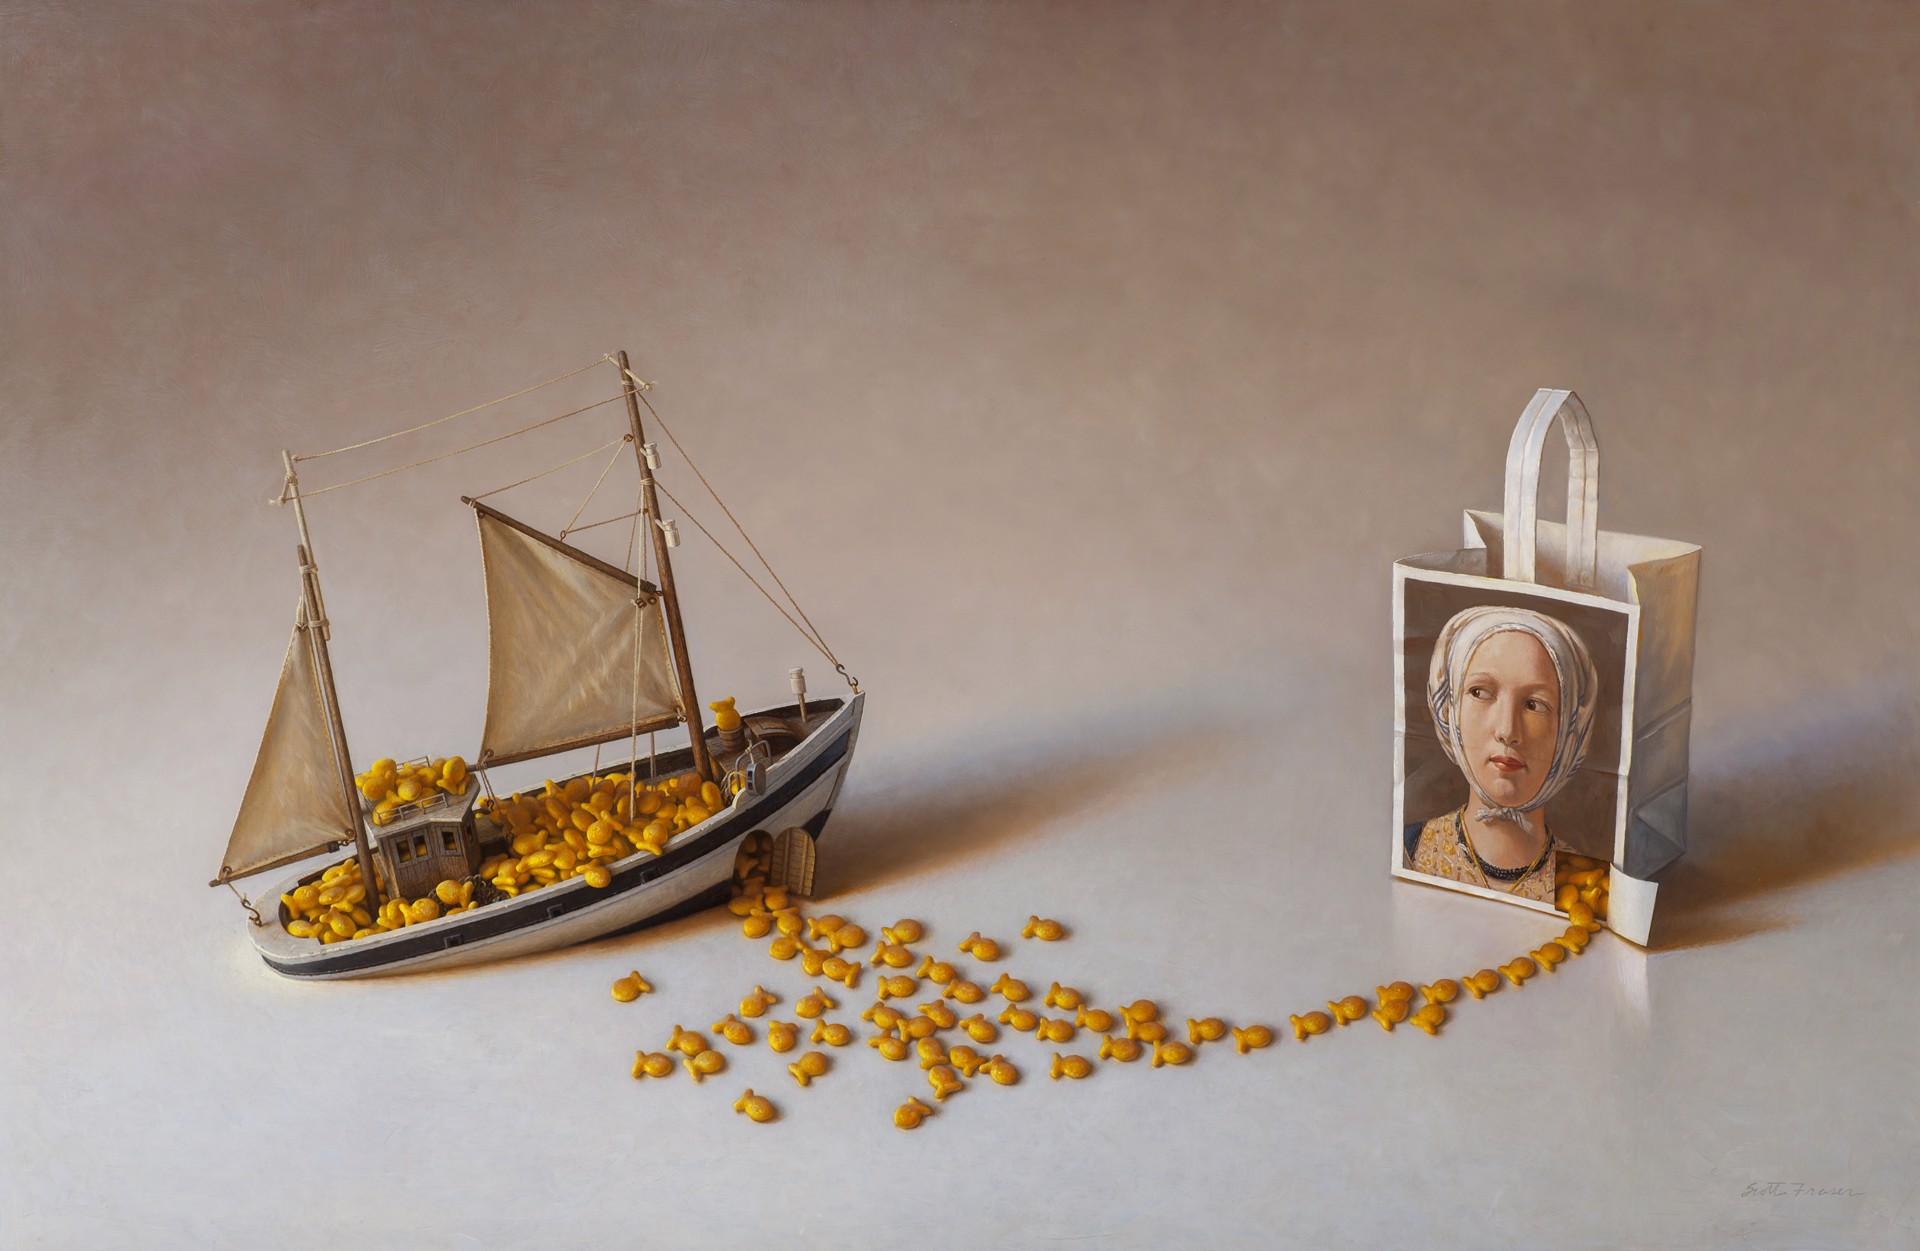 Sinking Ship by Scott Fraser